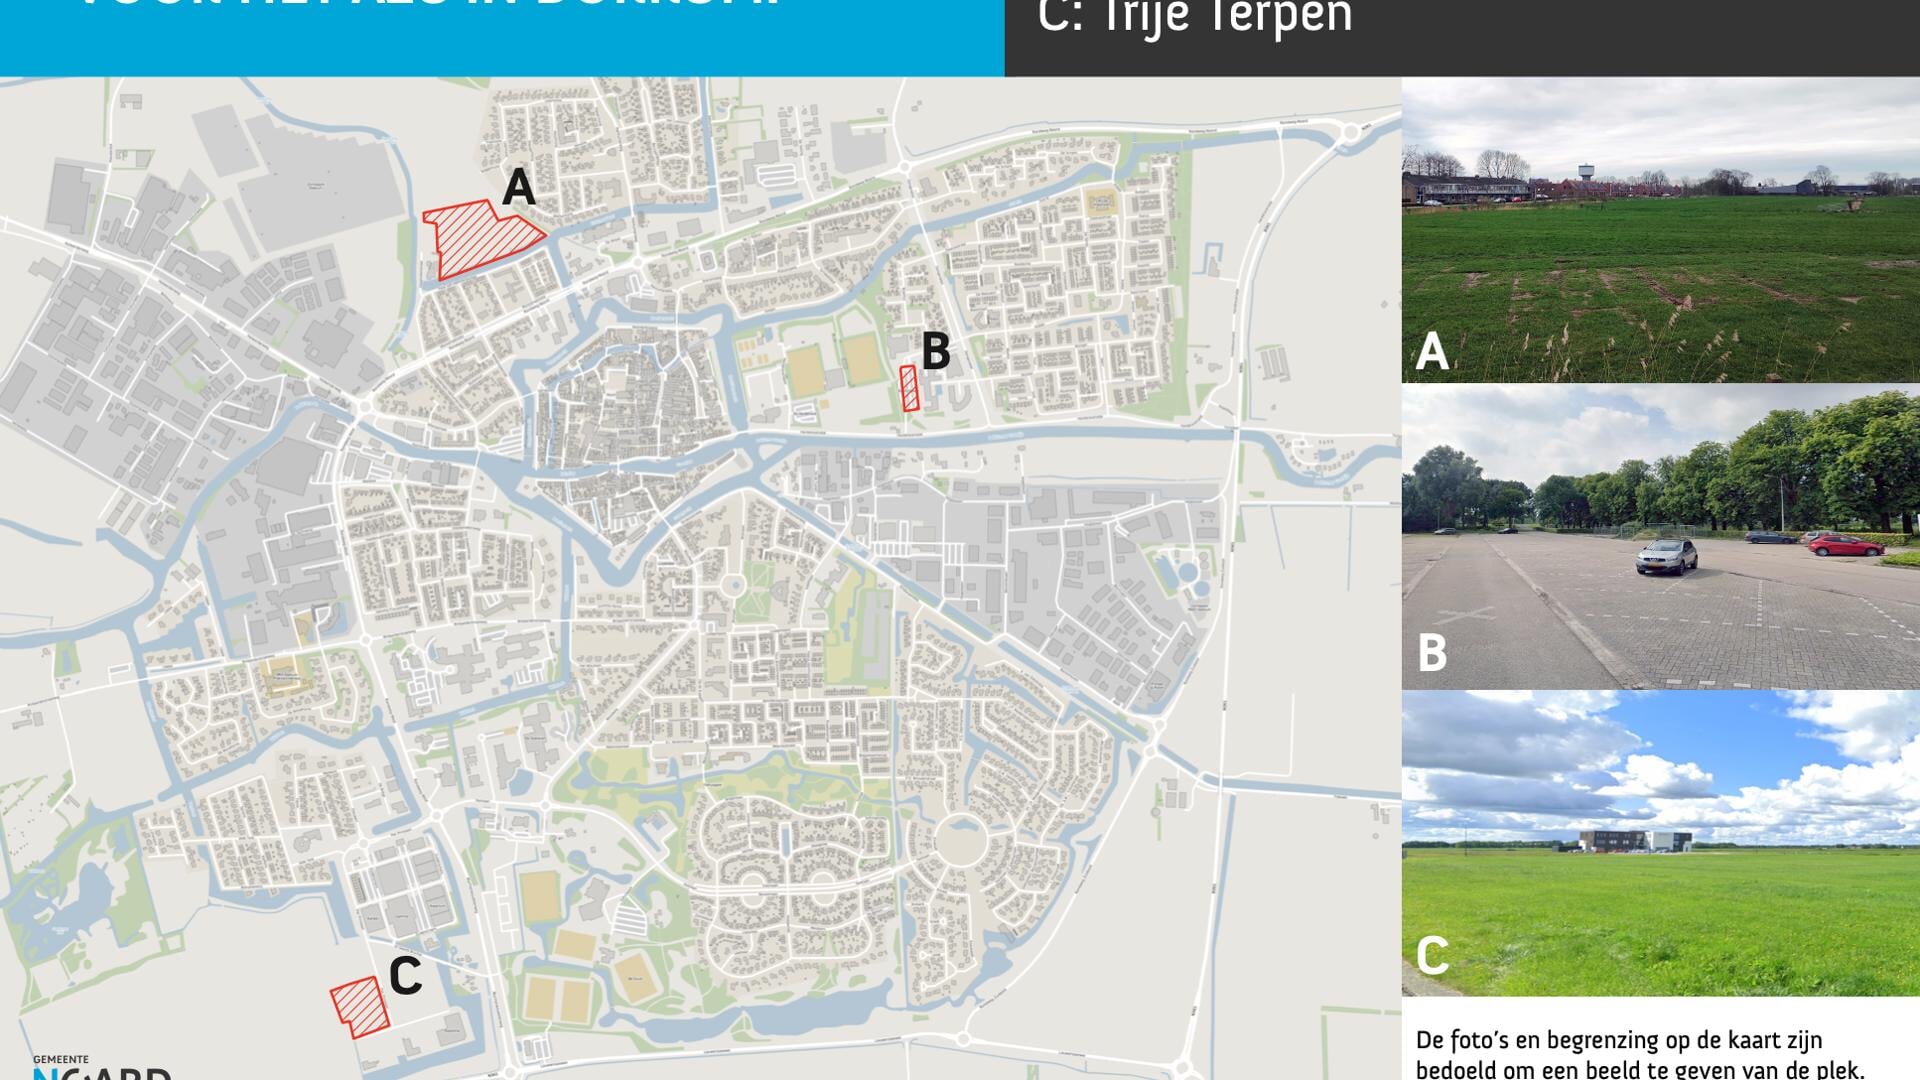 Van de drie geschikte locaties voor een kleinschalig azc in Dokkum is locatie A het meest geschikt, vindt het college van b. en w.